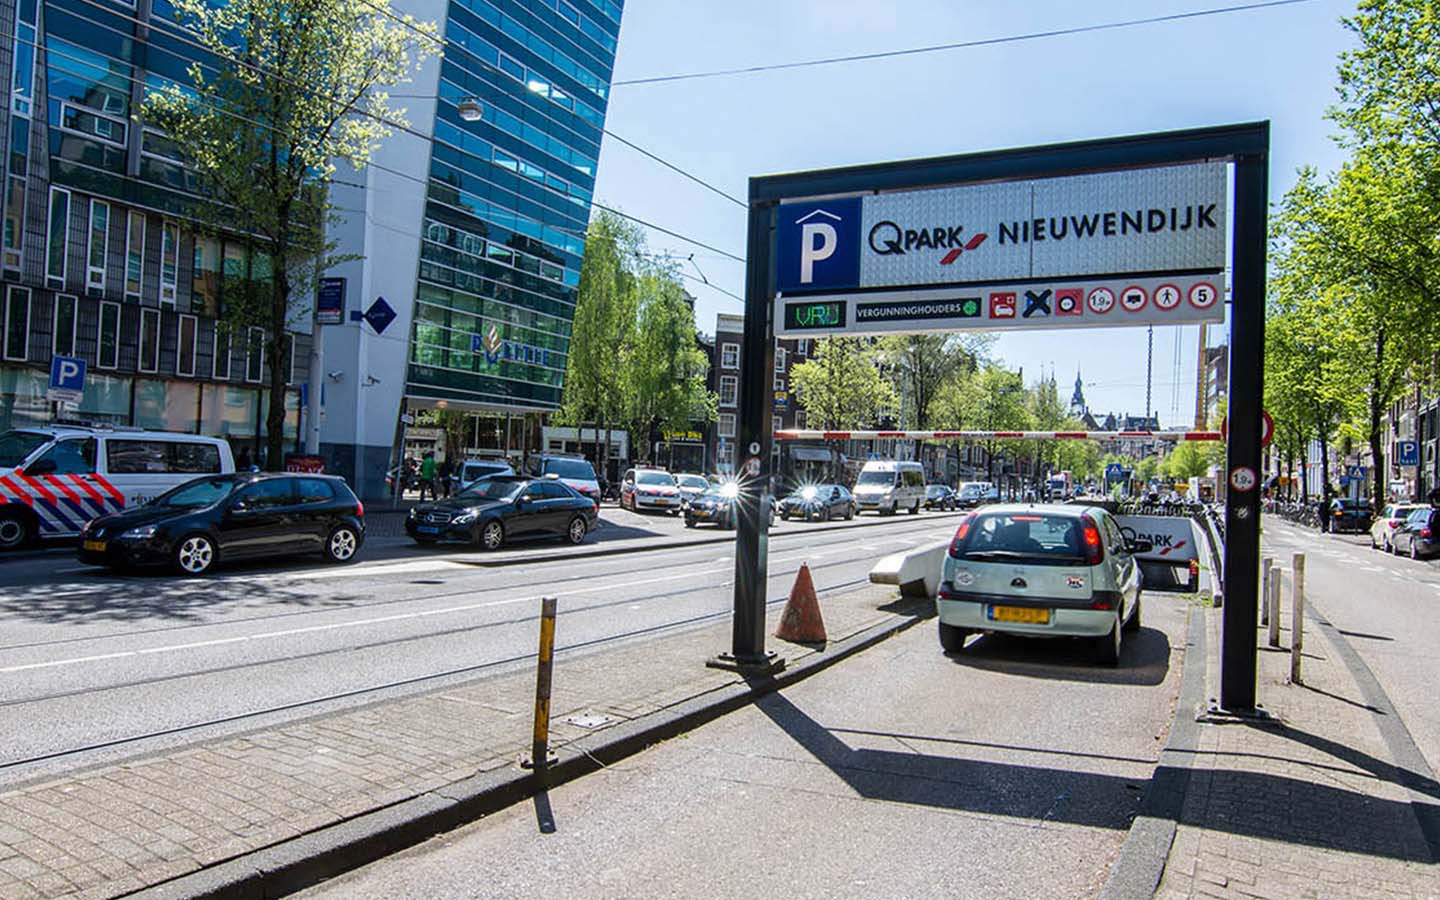 Parking Q-Park Nieuwendijk